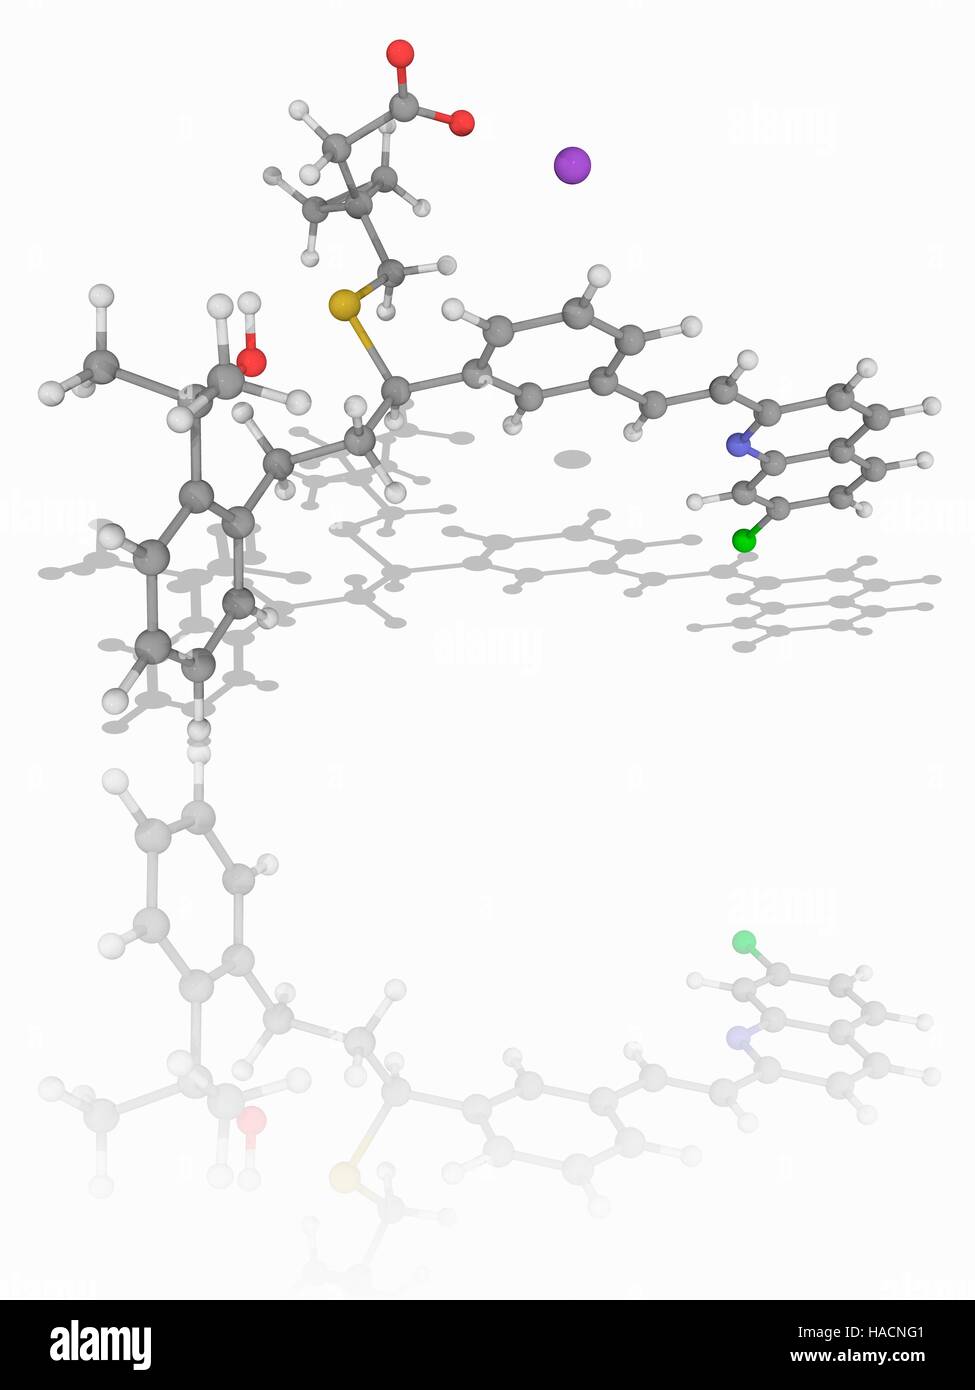 Montelukast Natrium. Molekülmodell von Montelukast Natrium (C35. H36. Cl.N.O3.S.Na), ein Leukotrien-Rezeptor-Antagonisten als Medikament zur Behandlung von Asthma und zur Linderung der Symptome der saisonalen Allergien verwendet. Atome als Kugeln dargestellt werden und sind farblich gekennzeichnet: Kohlenstoff (grau), Wasserstoff (weiß), Stickstoff (blau), Sauerstoff (rot), Chlor (grün), Schwefel (gelb) und Natrium (violett) Abbildung. Stockfoto